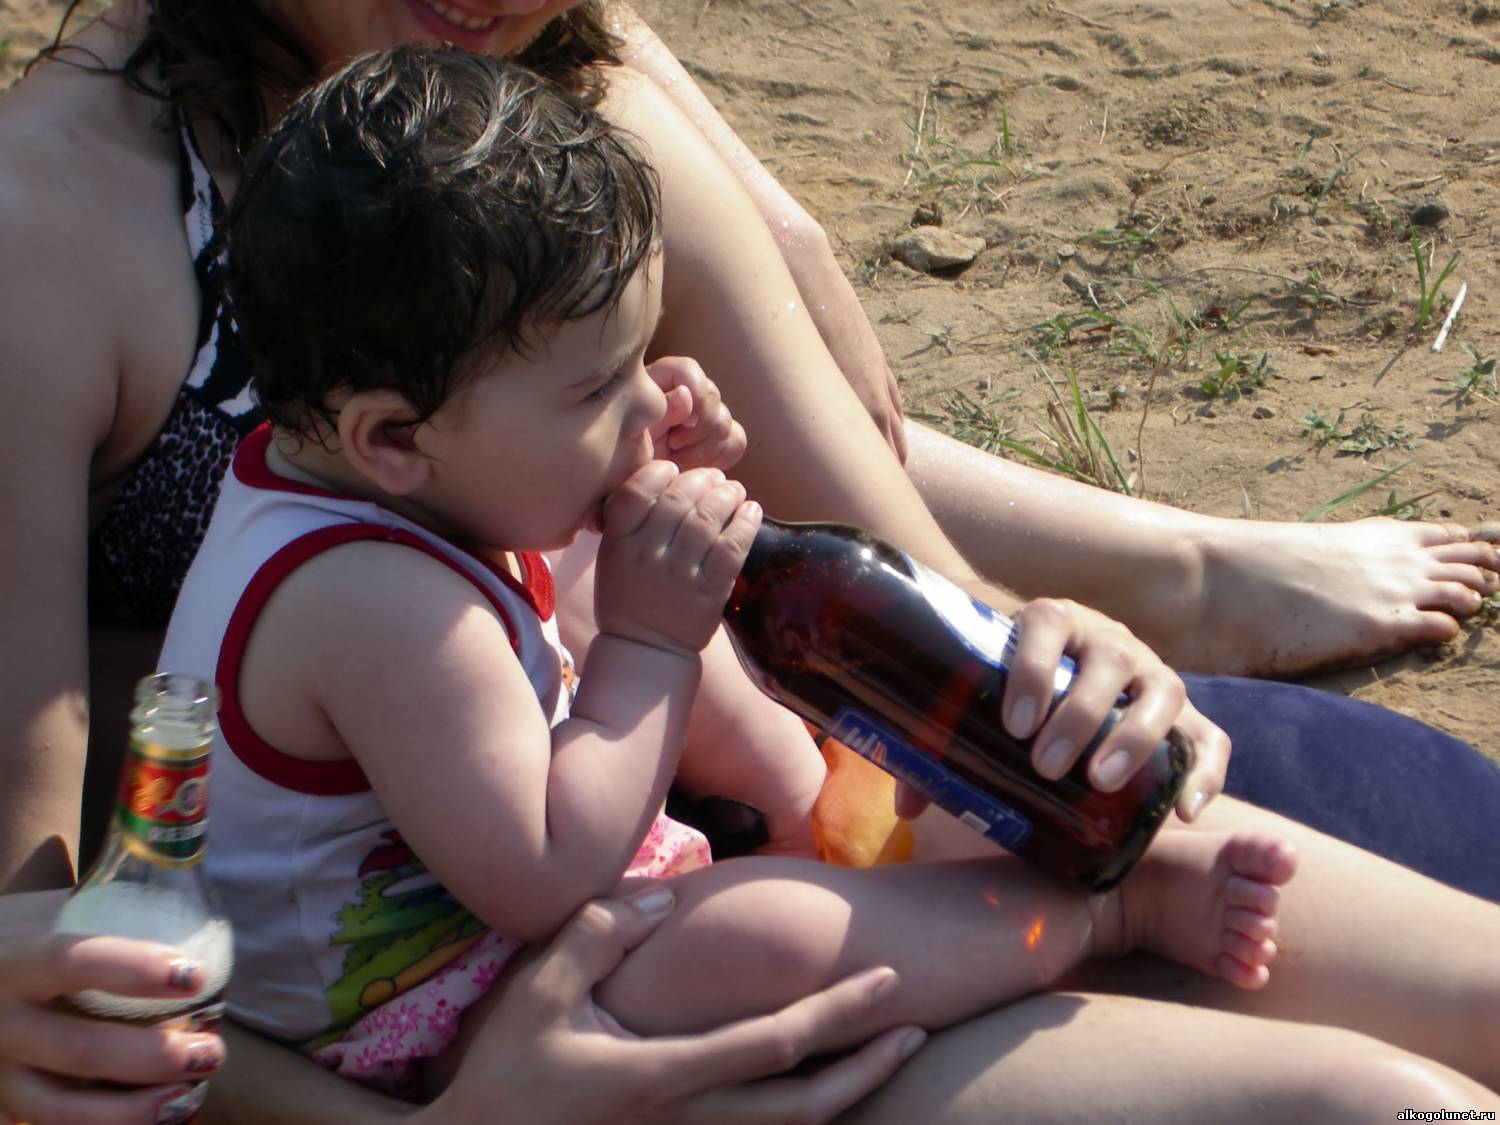 Про пьяную маму. Детский алкоголизм. Пьянство родителей при ребенке. Мамаша с пивом и ребенком. Пьянство при детях.